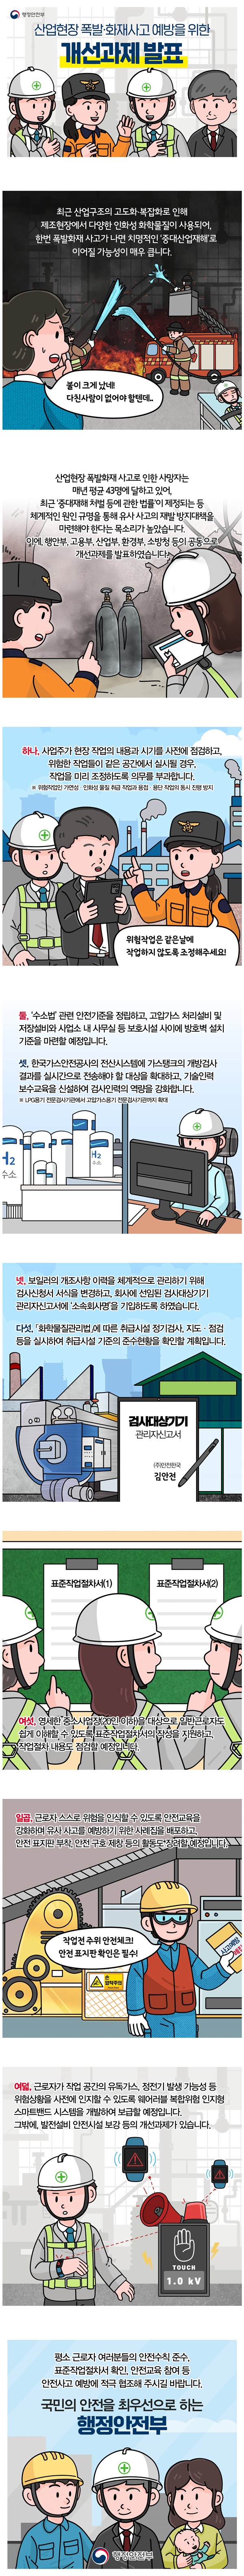 [웹툰] 사업현장 폭발·화재사고 예방을 위한 개선 과제 발표!